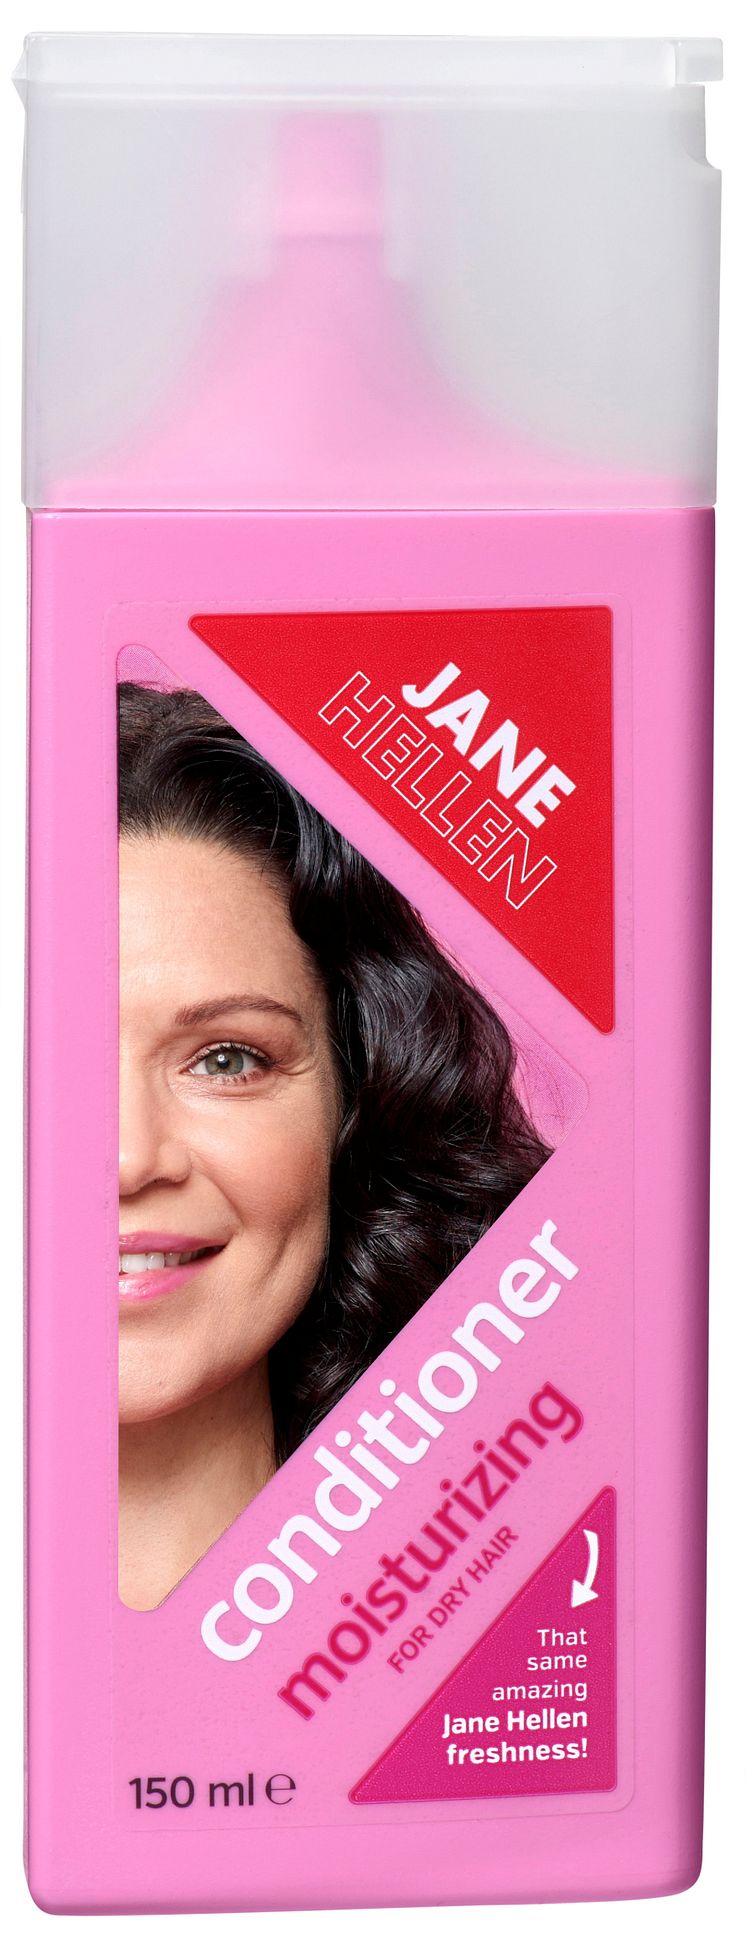 NEW! JANE HELLEN CONDITIONER FOR DRY HAIR 150 ML 29,90 SEK.jpg